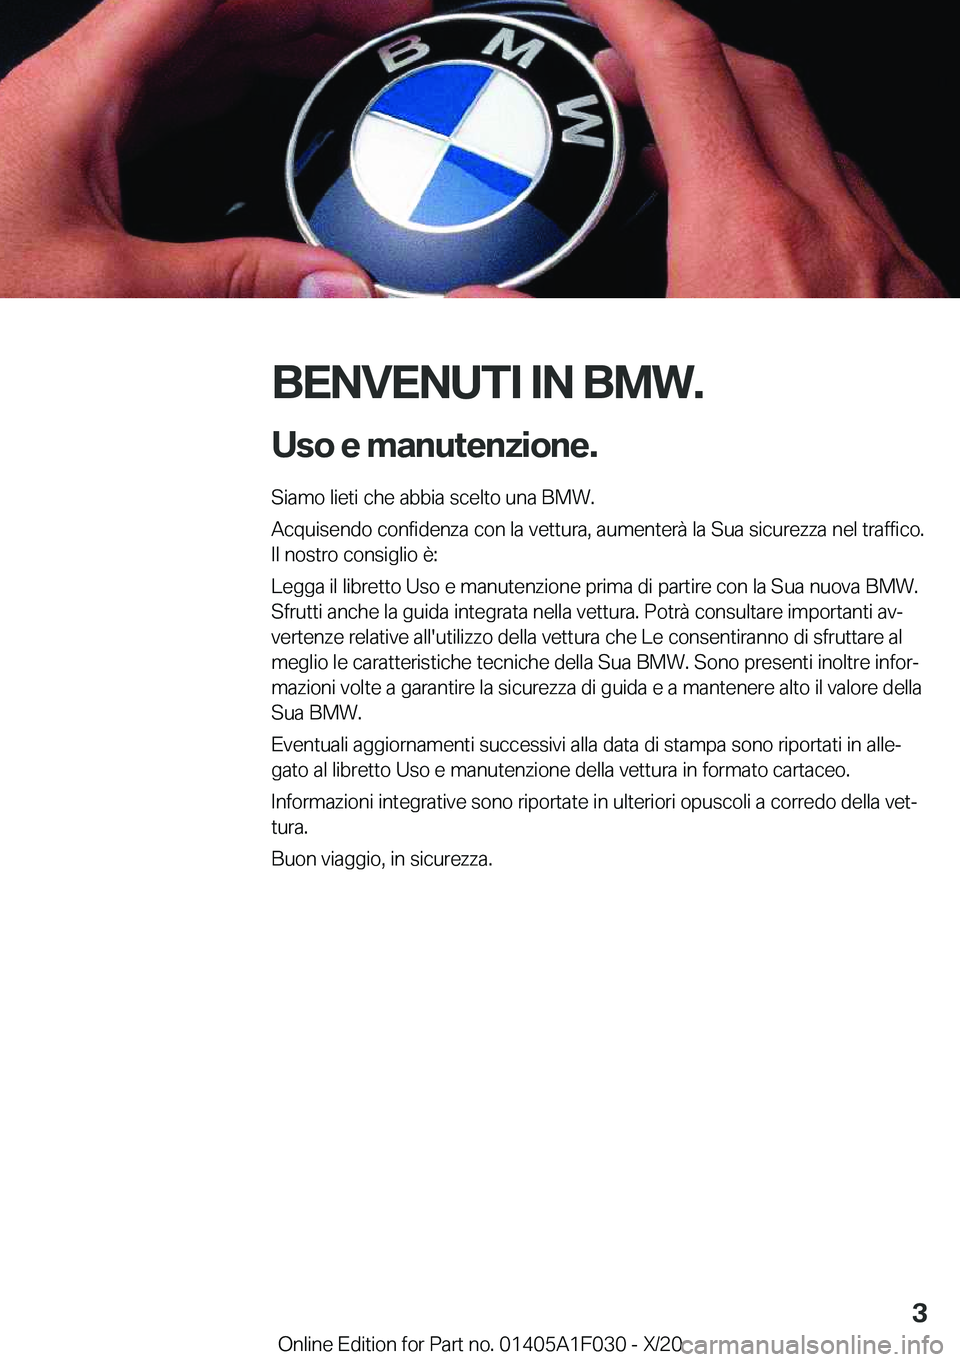 BMW X1 2021  Libretti Di Uso E manutenzione (in Italian) �B�E�N�V�E�N�U�T�I��I�N��B�M�W�.�U�s�o��e��m�a�n�u�t�e�n�z�i�o�n�e�.
�S�i�a�m�o��l�i�e�t�i��c�h�e��a�b�b�i�a��s�c�e�l�t�o��u�n�a��B�M�W�.
�A�c�q�u�i�s�e�n�d�o��c�o�n�f�i�d�e�n�z�a��c�o�n�